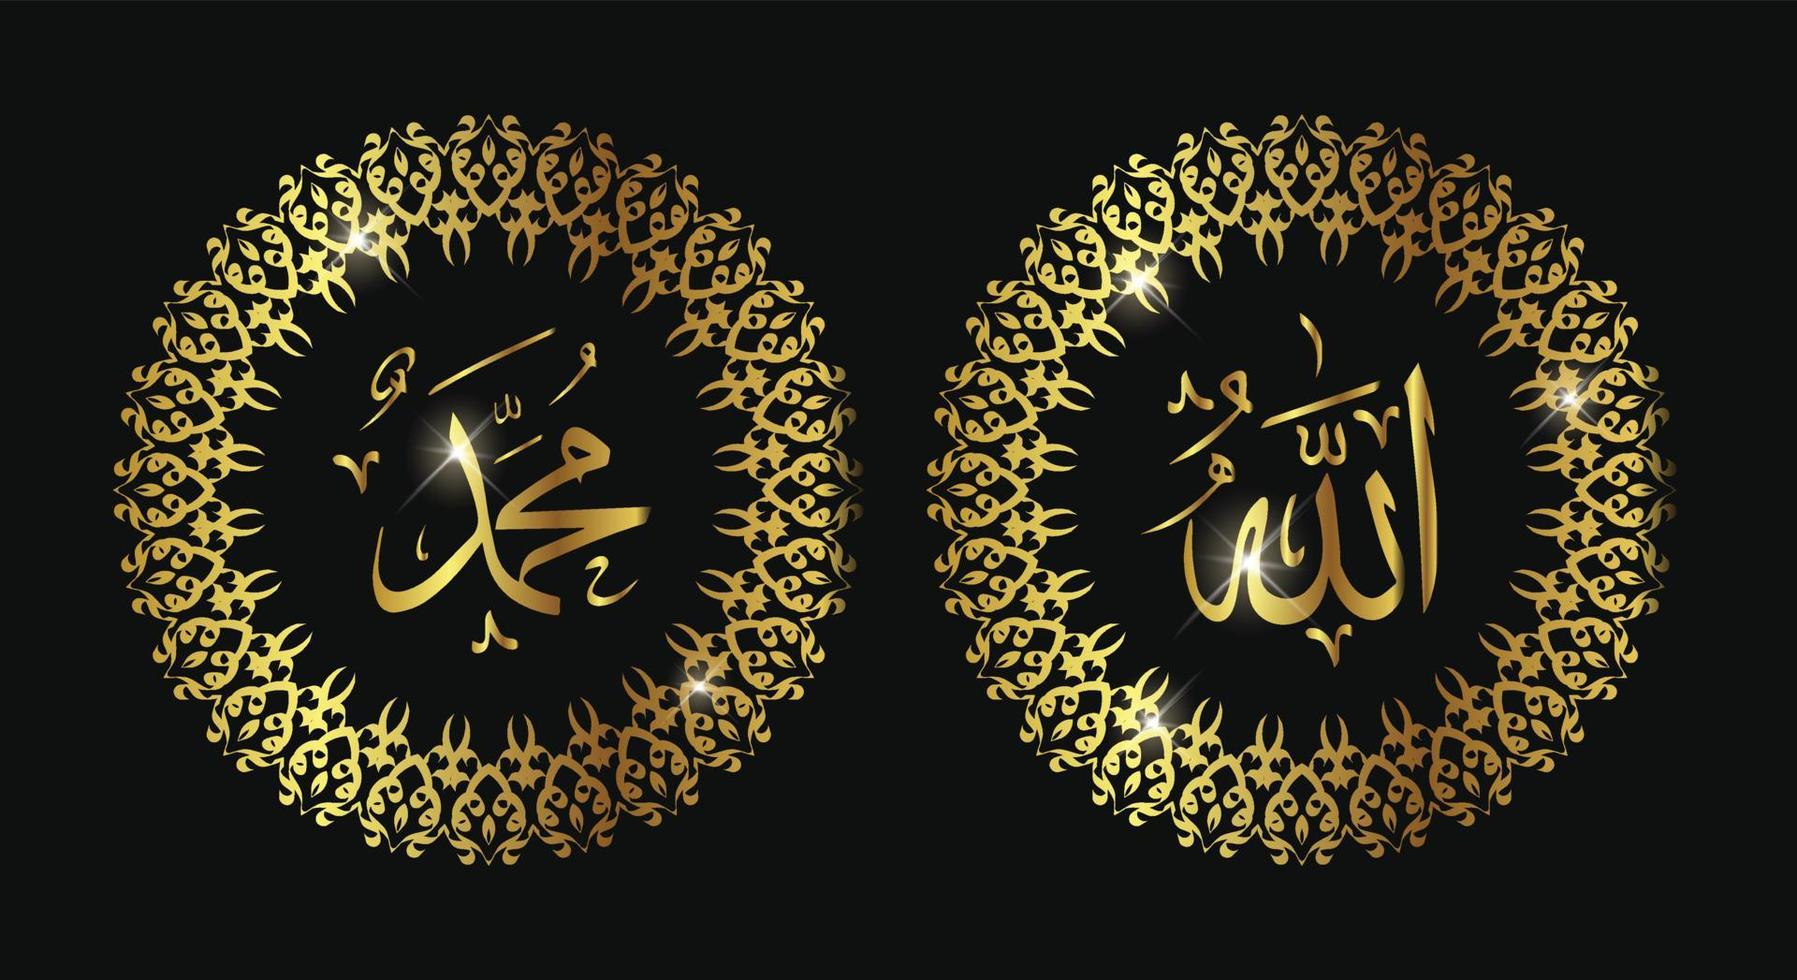 caligrafía árabe de allah muhammad con marco de círculo dorado. estilo vintage. vector